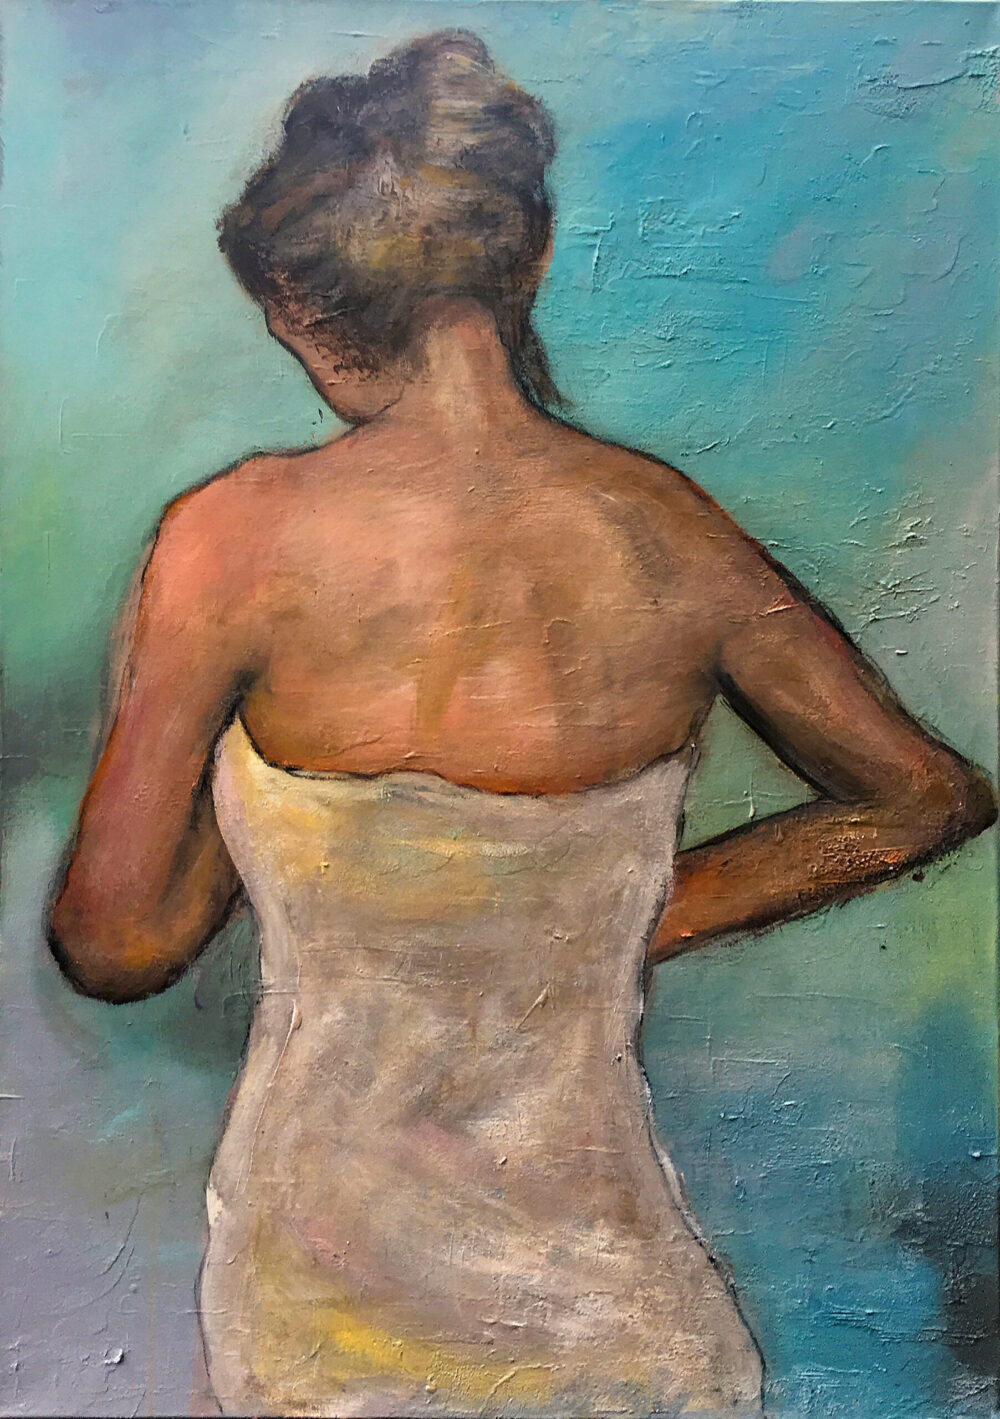 Das Gemälde Frau mit Handtuch zeigt eine Frau mittleren Alters und hochgesteckten Haaren in Rückenansicht die aus der Dusche kommend sich ein weisses Handtuch umgebunden hat. Der Hintergrund ist türkisblau.